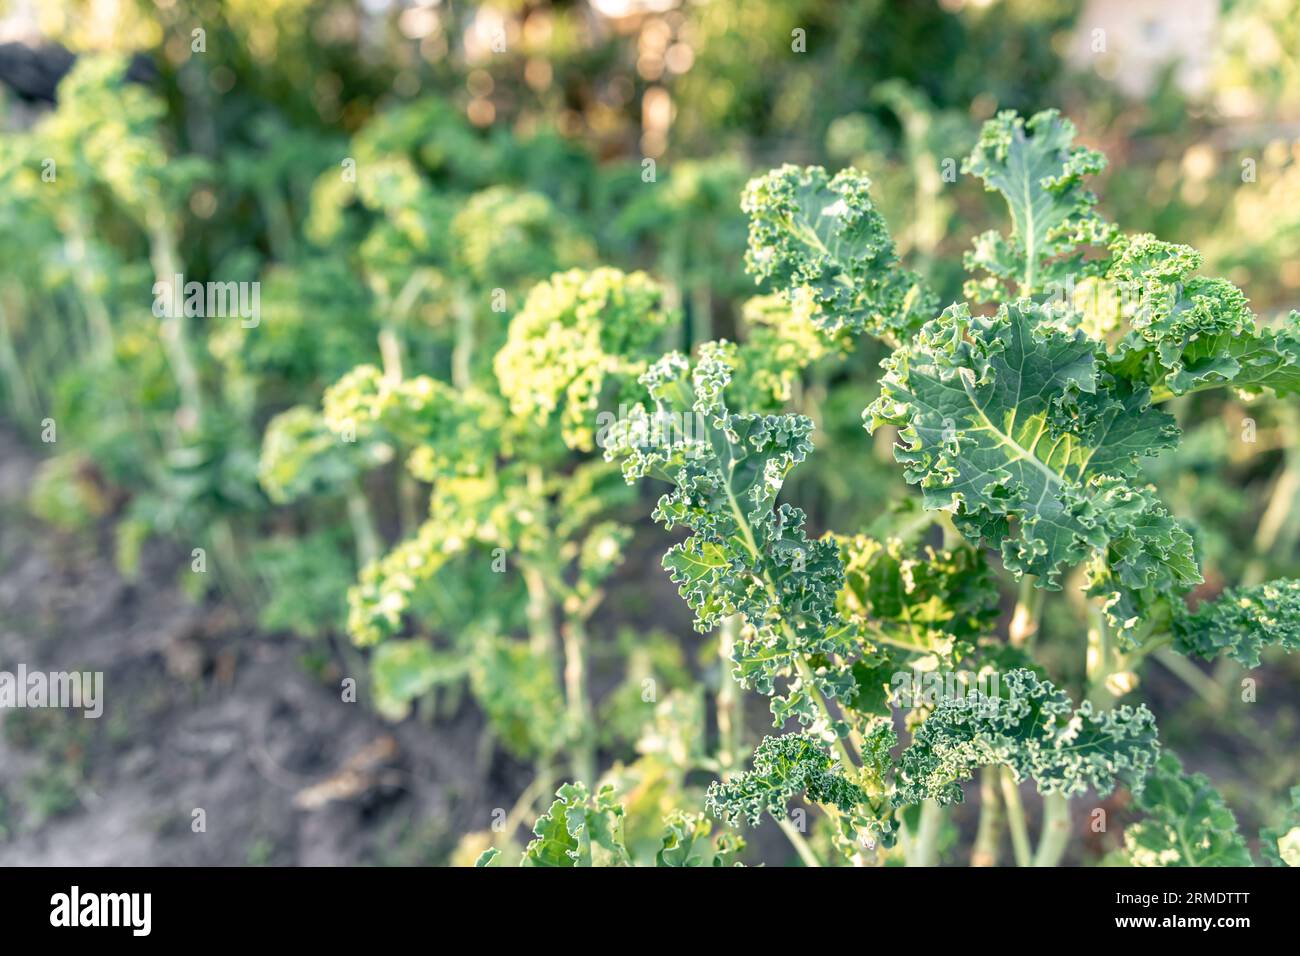 Nahaufnahme einer grünen Grünkohl-Pflanze in einem Gemüsegarten. Stockfoto